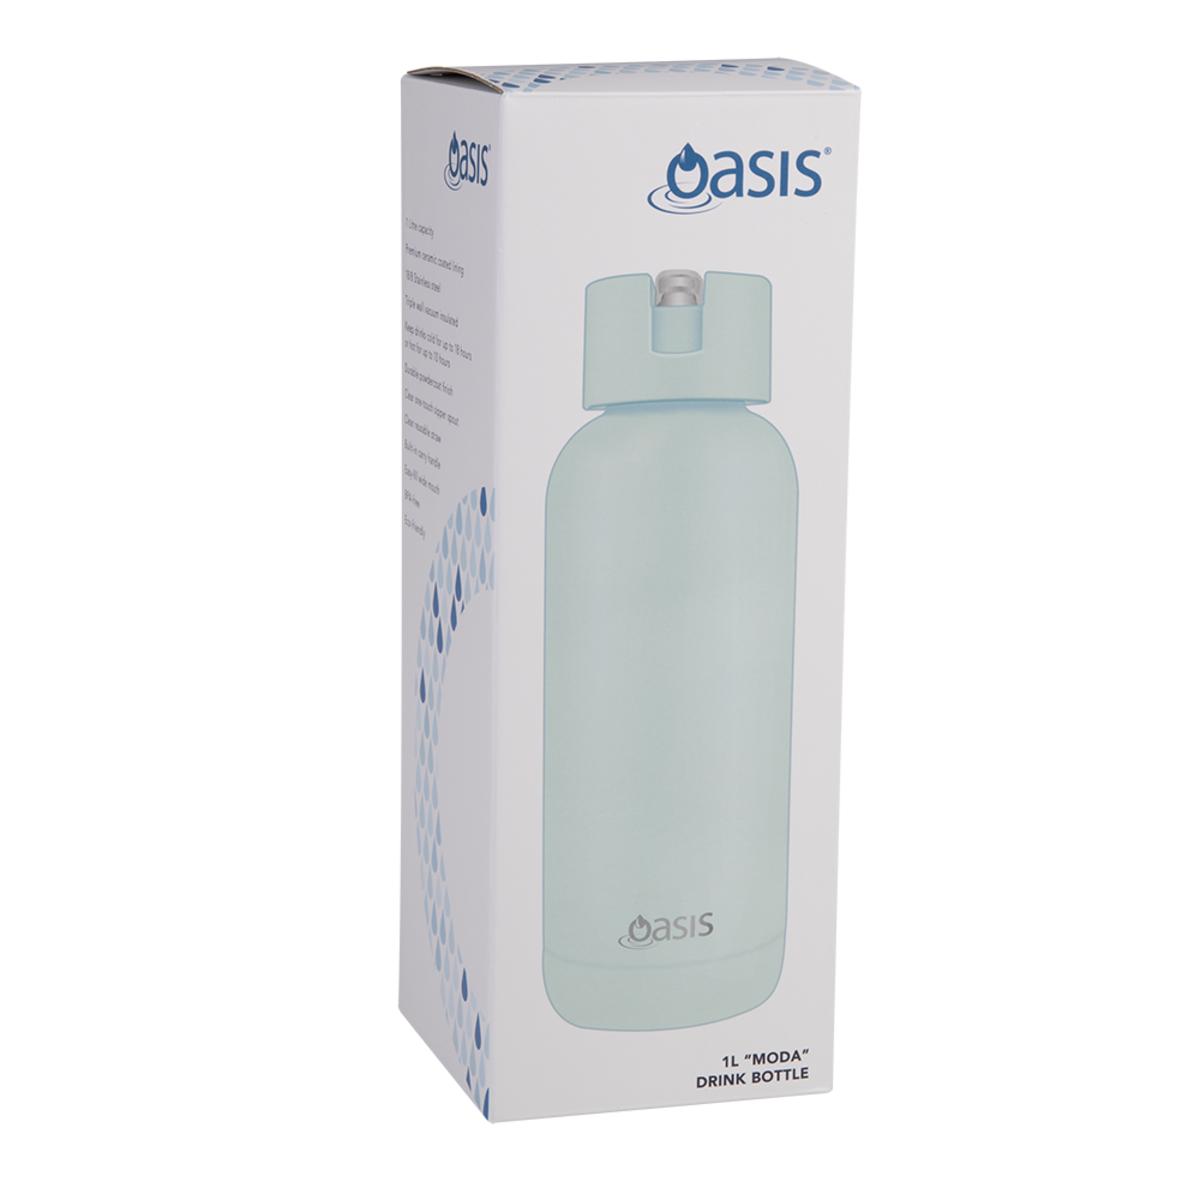 Oasis Moda 1L Drink Bottle